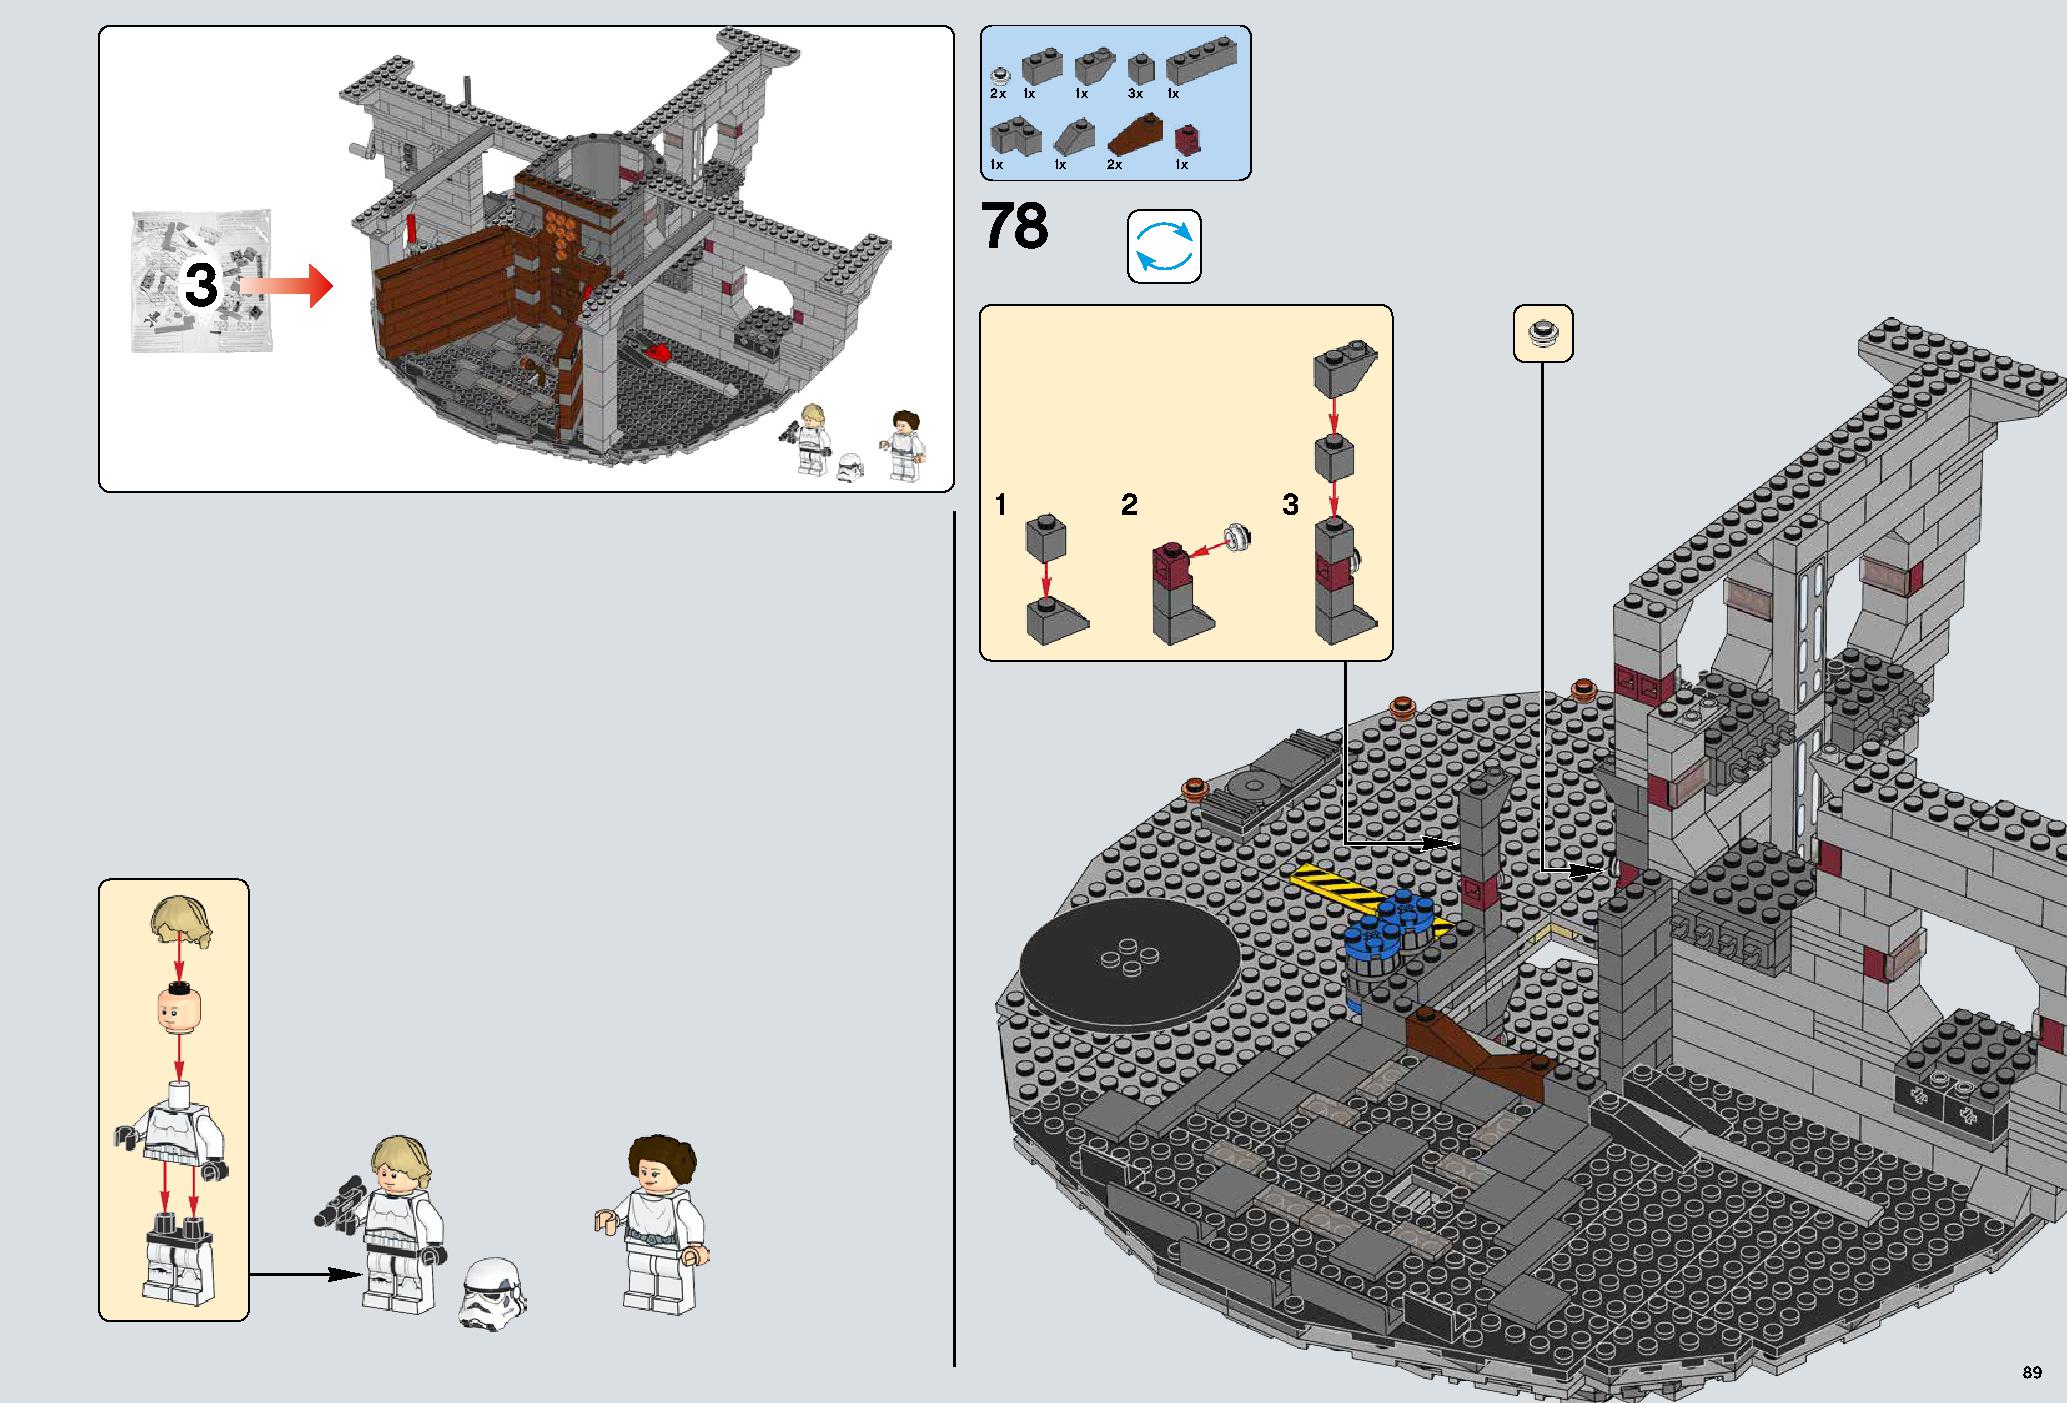 デス・スター 75159 レゴの商品情報 レゴの説明書・組立方法 89 page